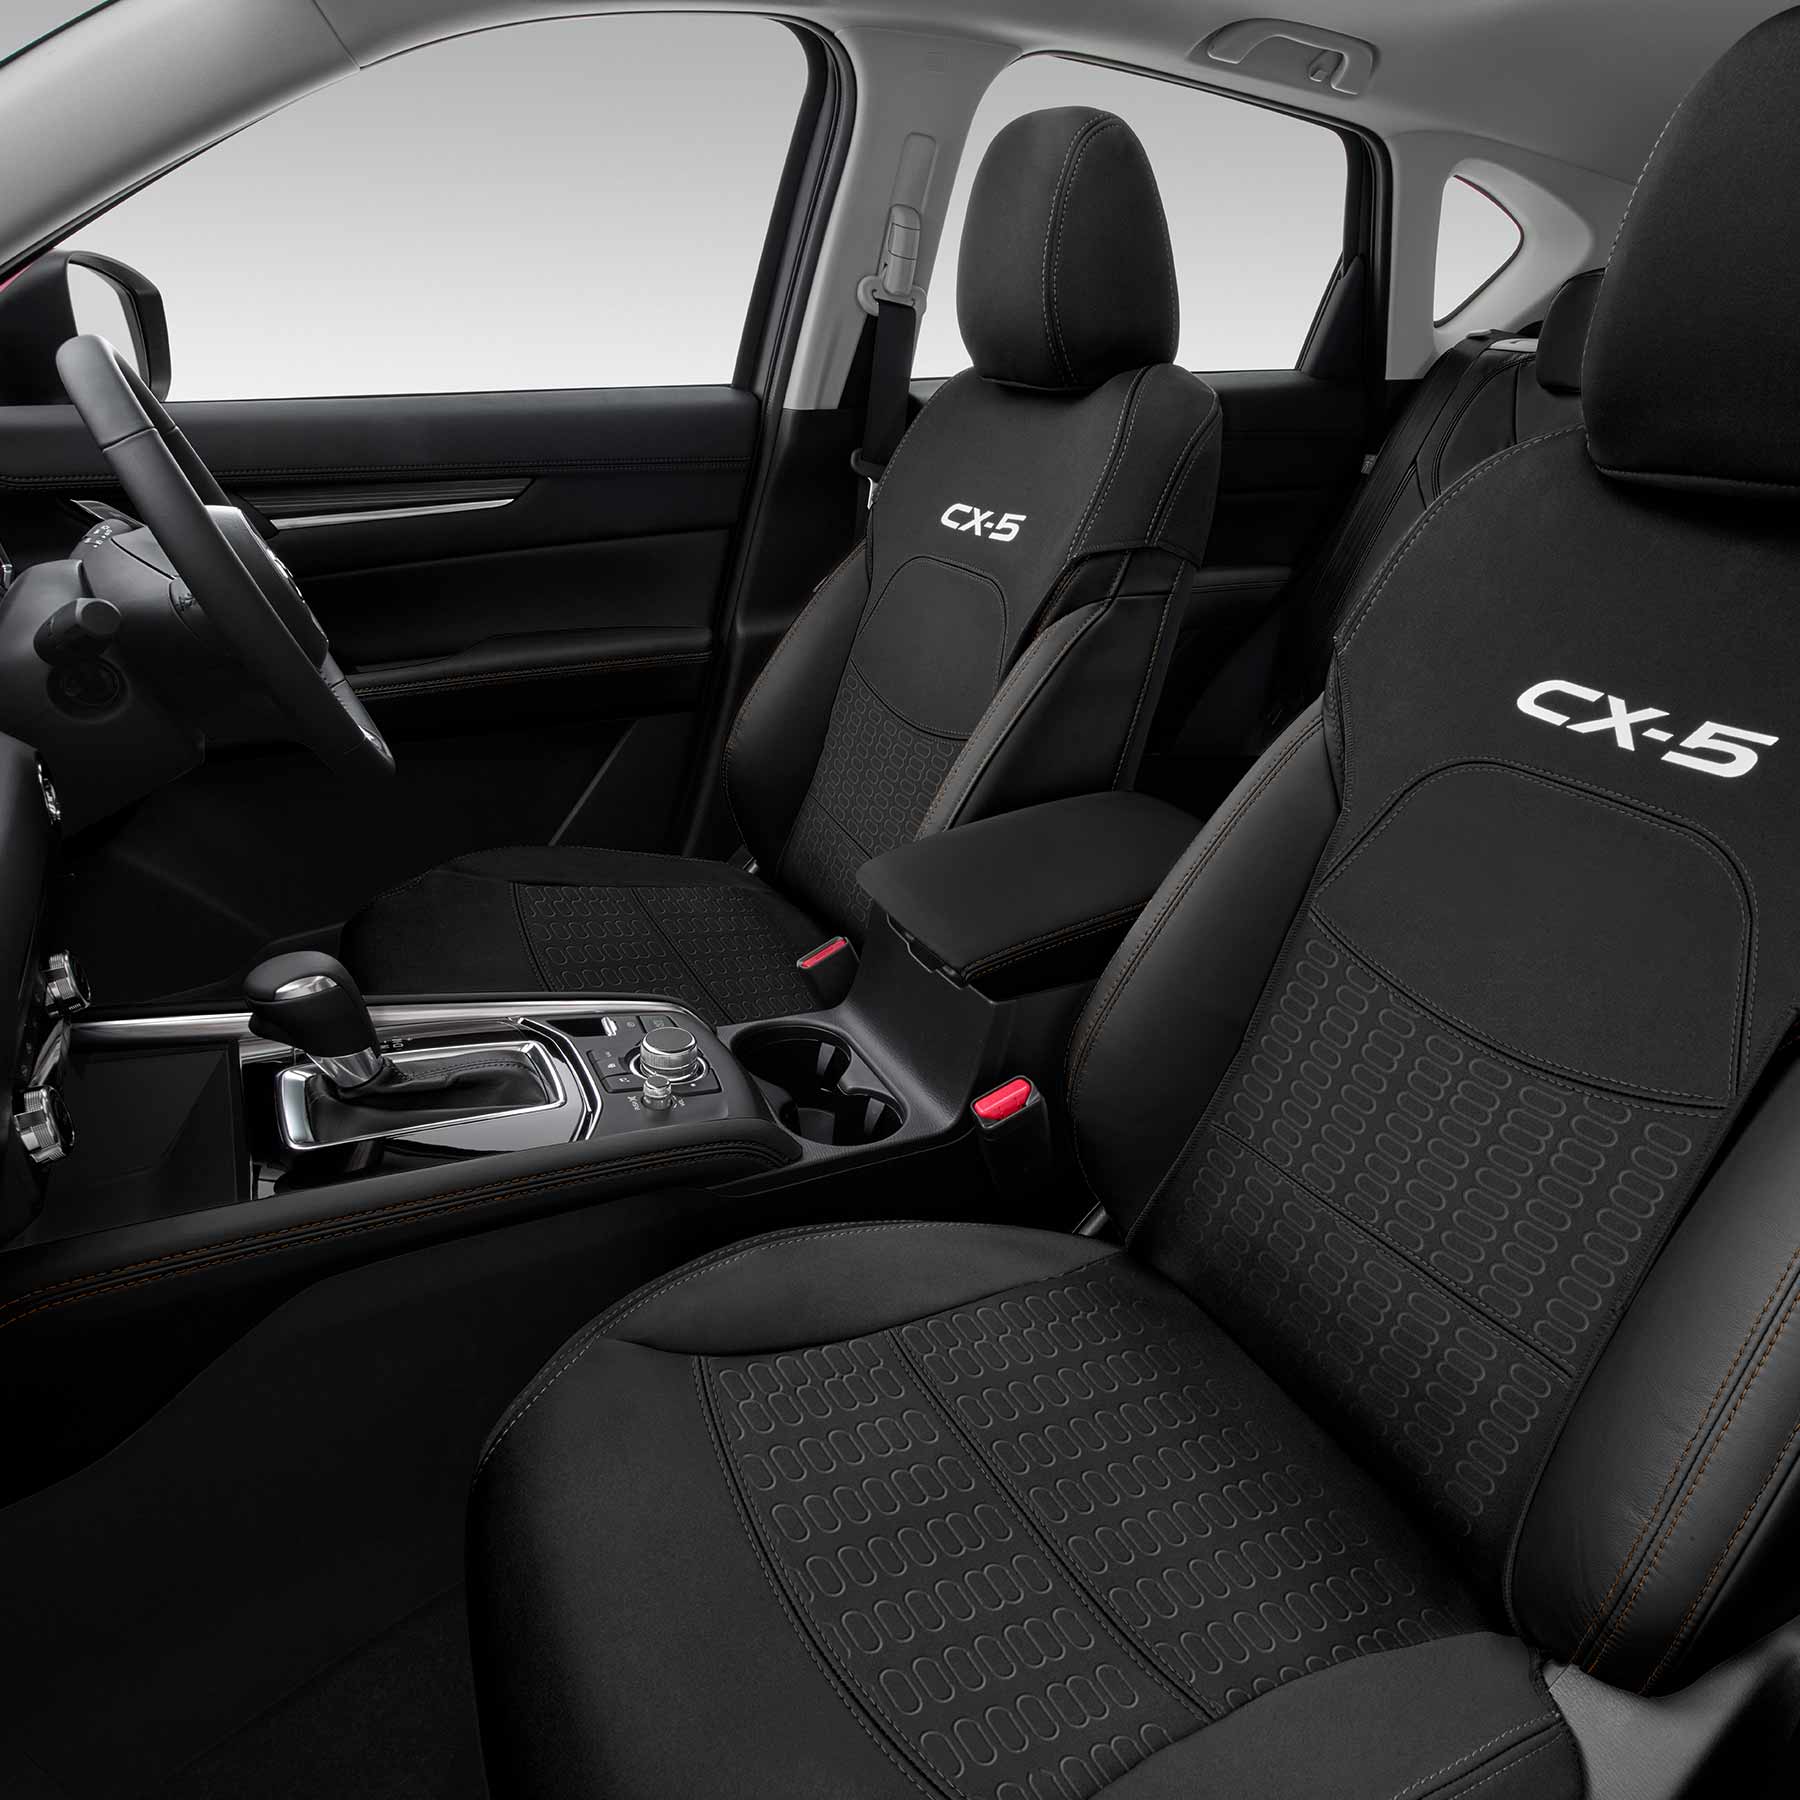 Mazda Accessories Personalise Your Mazda Cx 5